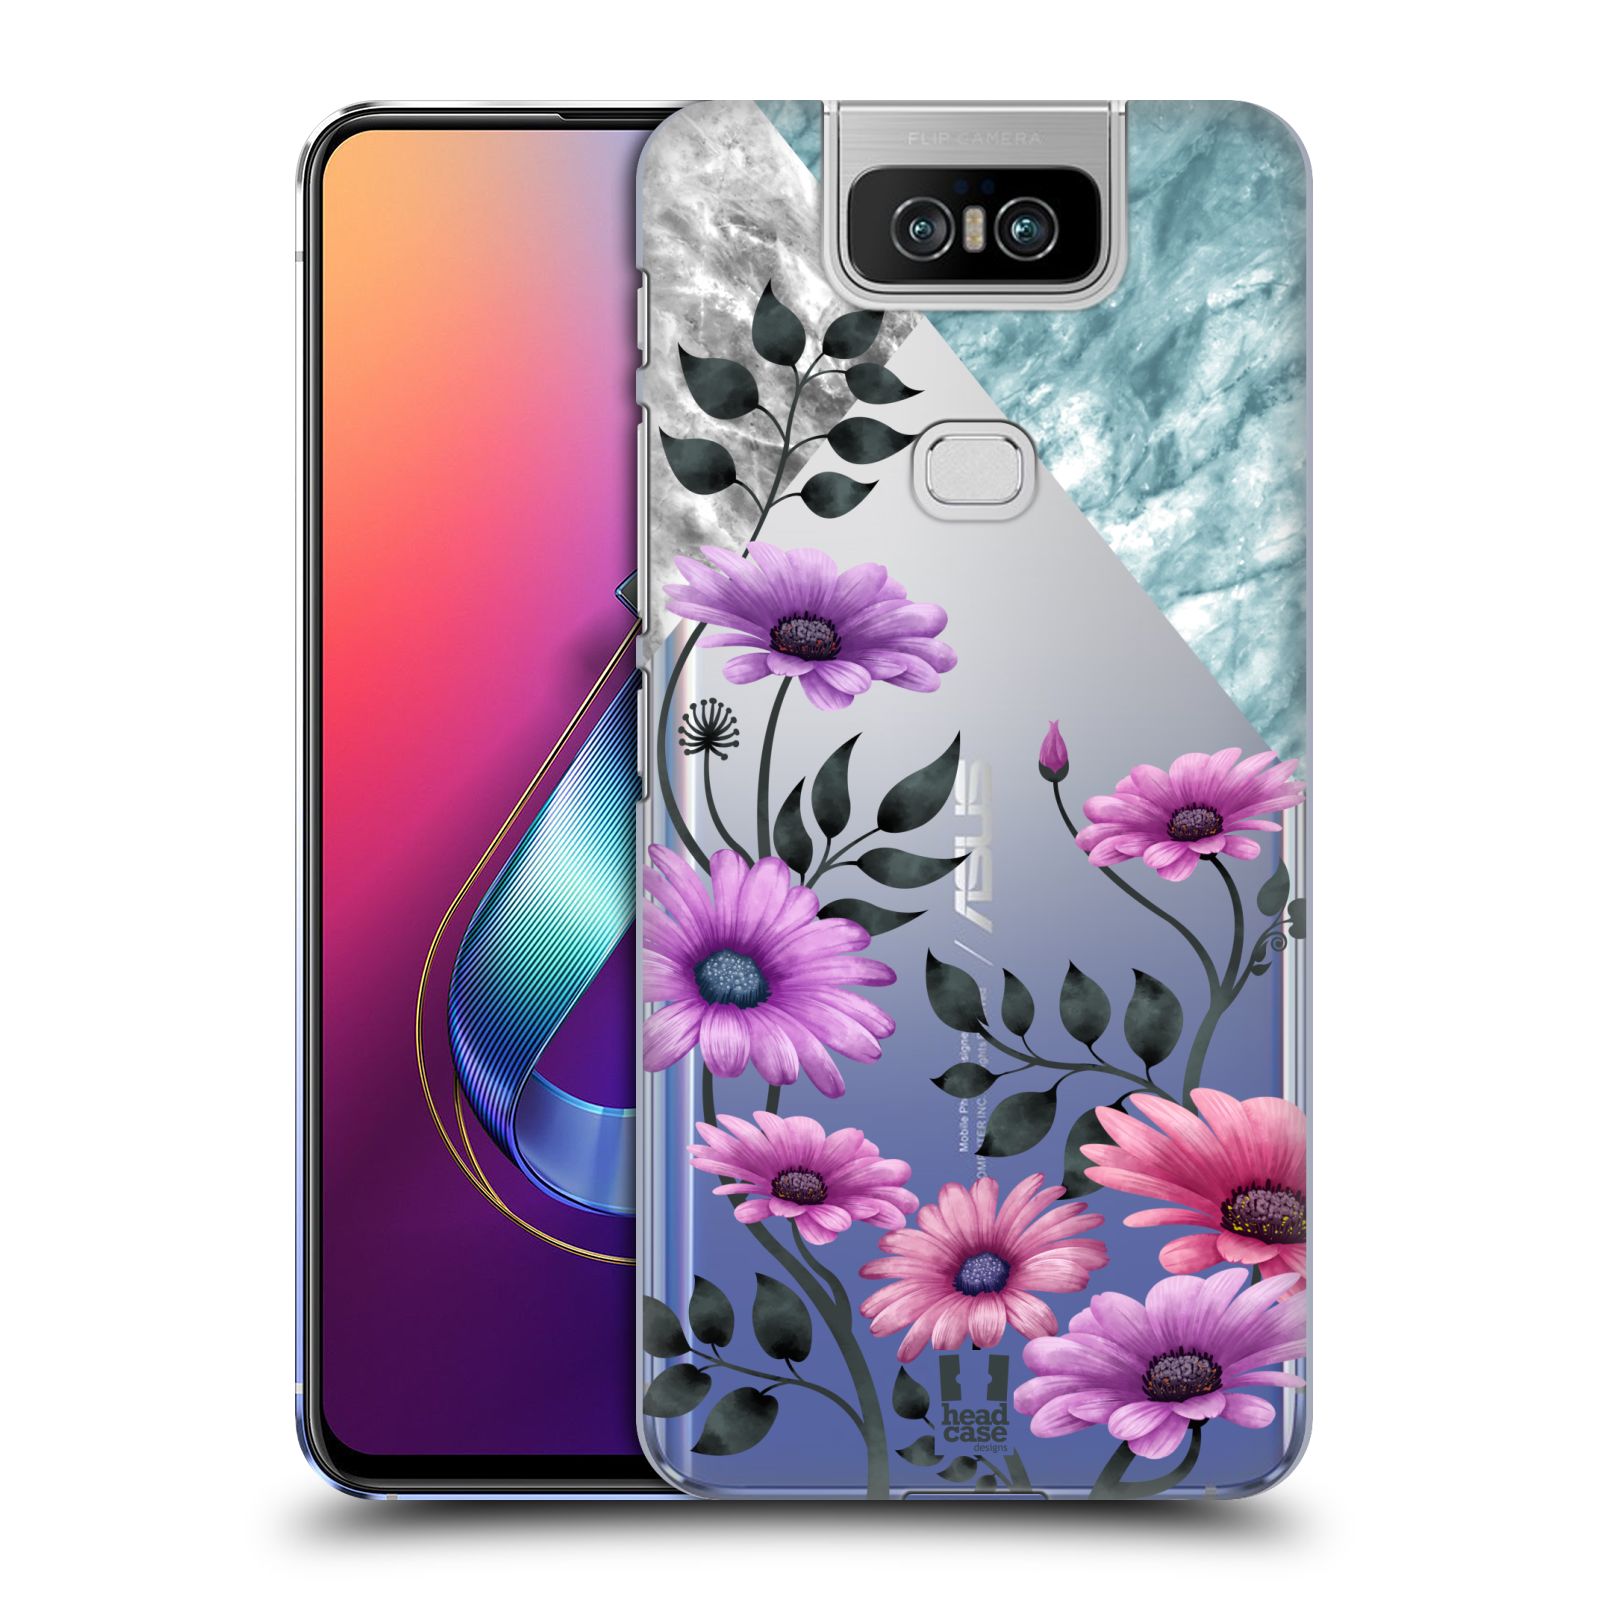 Pouzdro na mobil Asus Zenfone 6 ZS630KL - HEAD CASE - květiny hvězdnice, Aster fialová a modrá